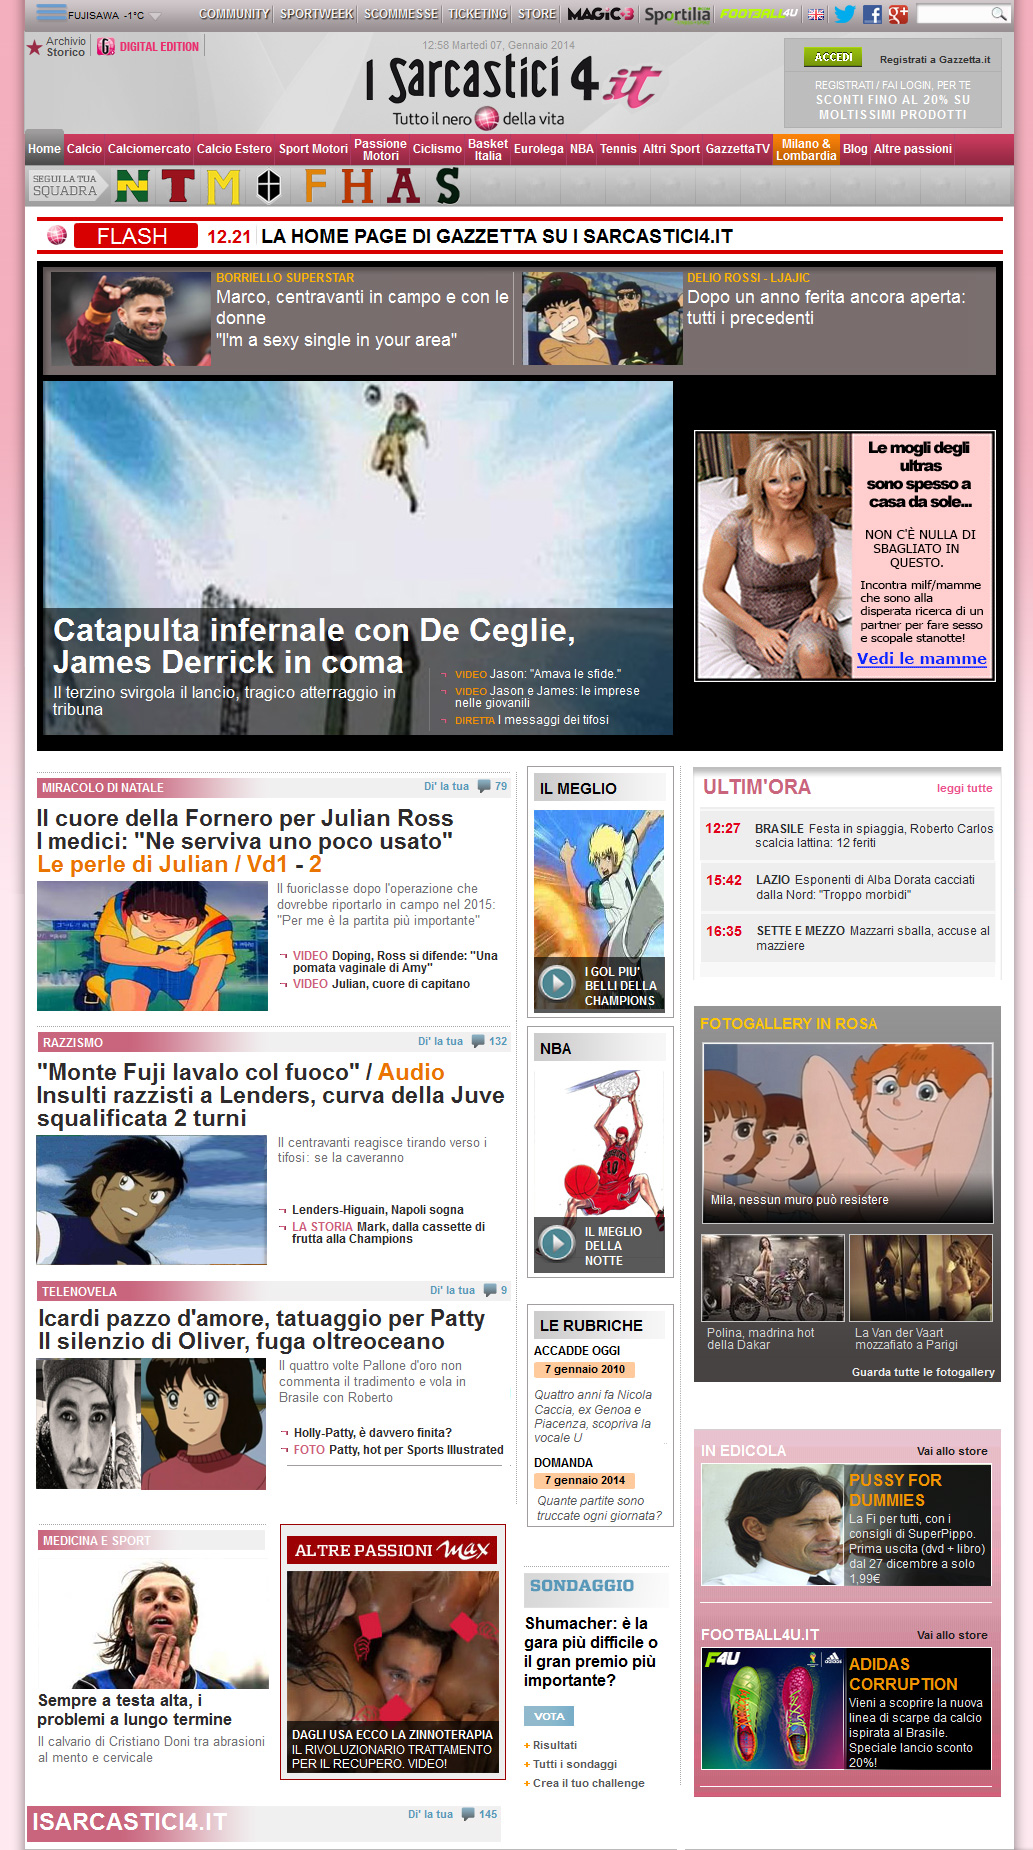 Home page gazzetta.it - La satira dei Sarcastici 4 width=